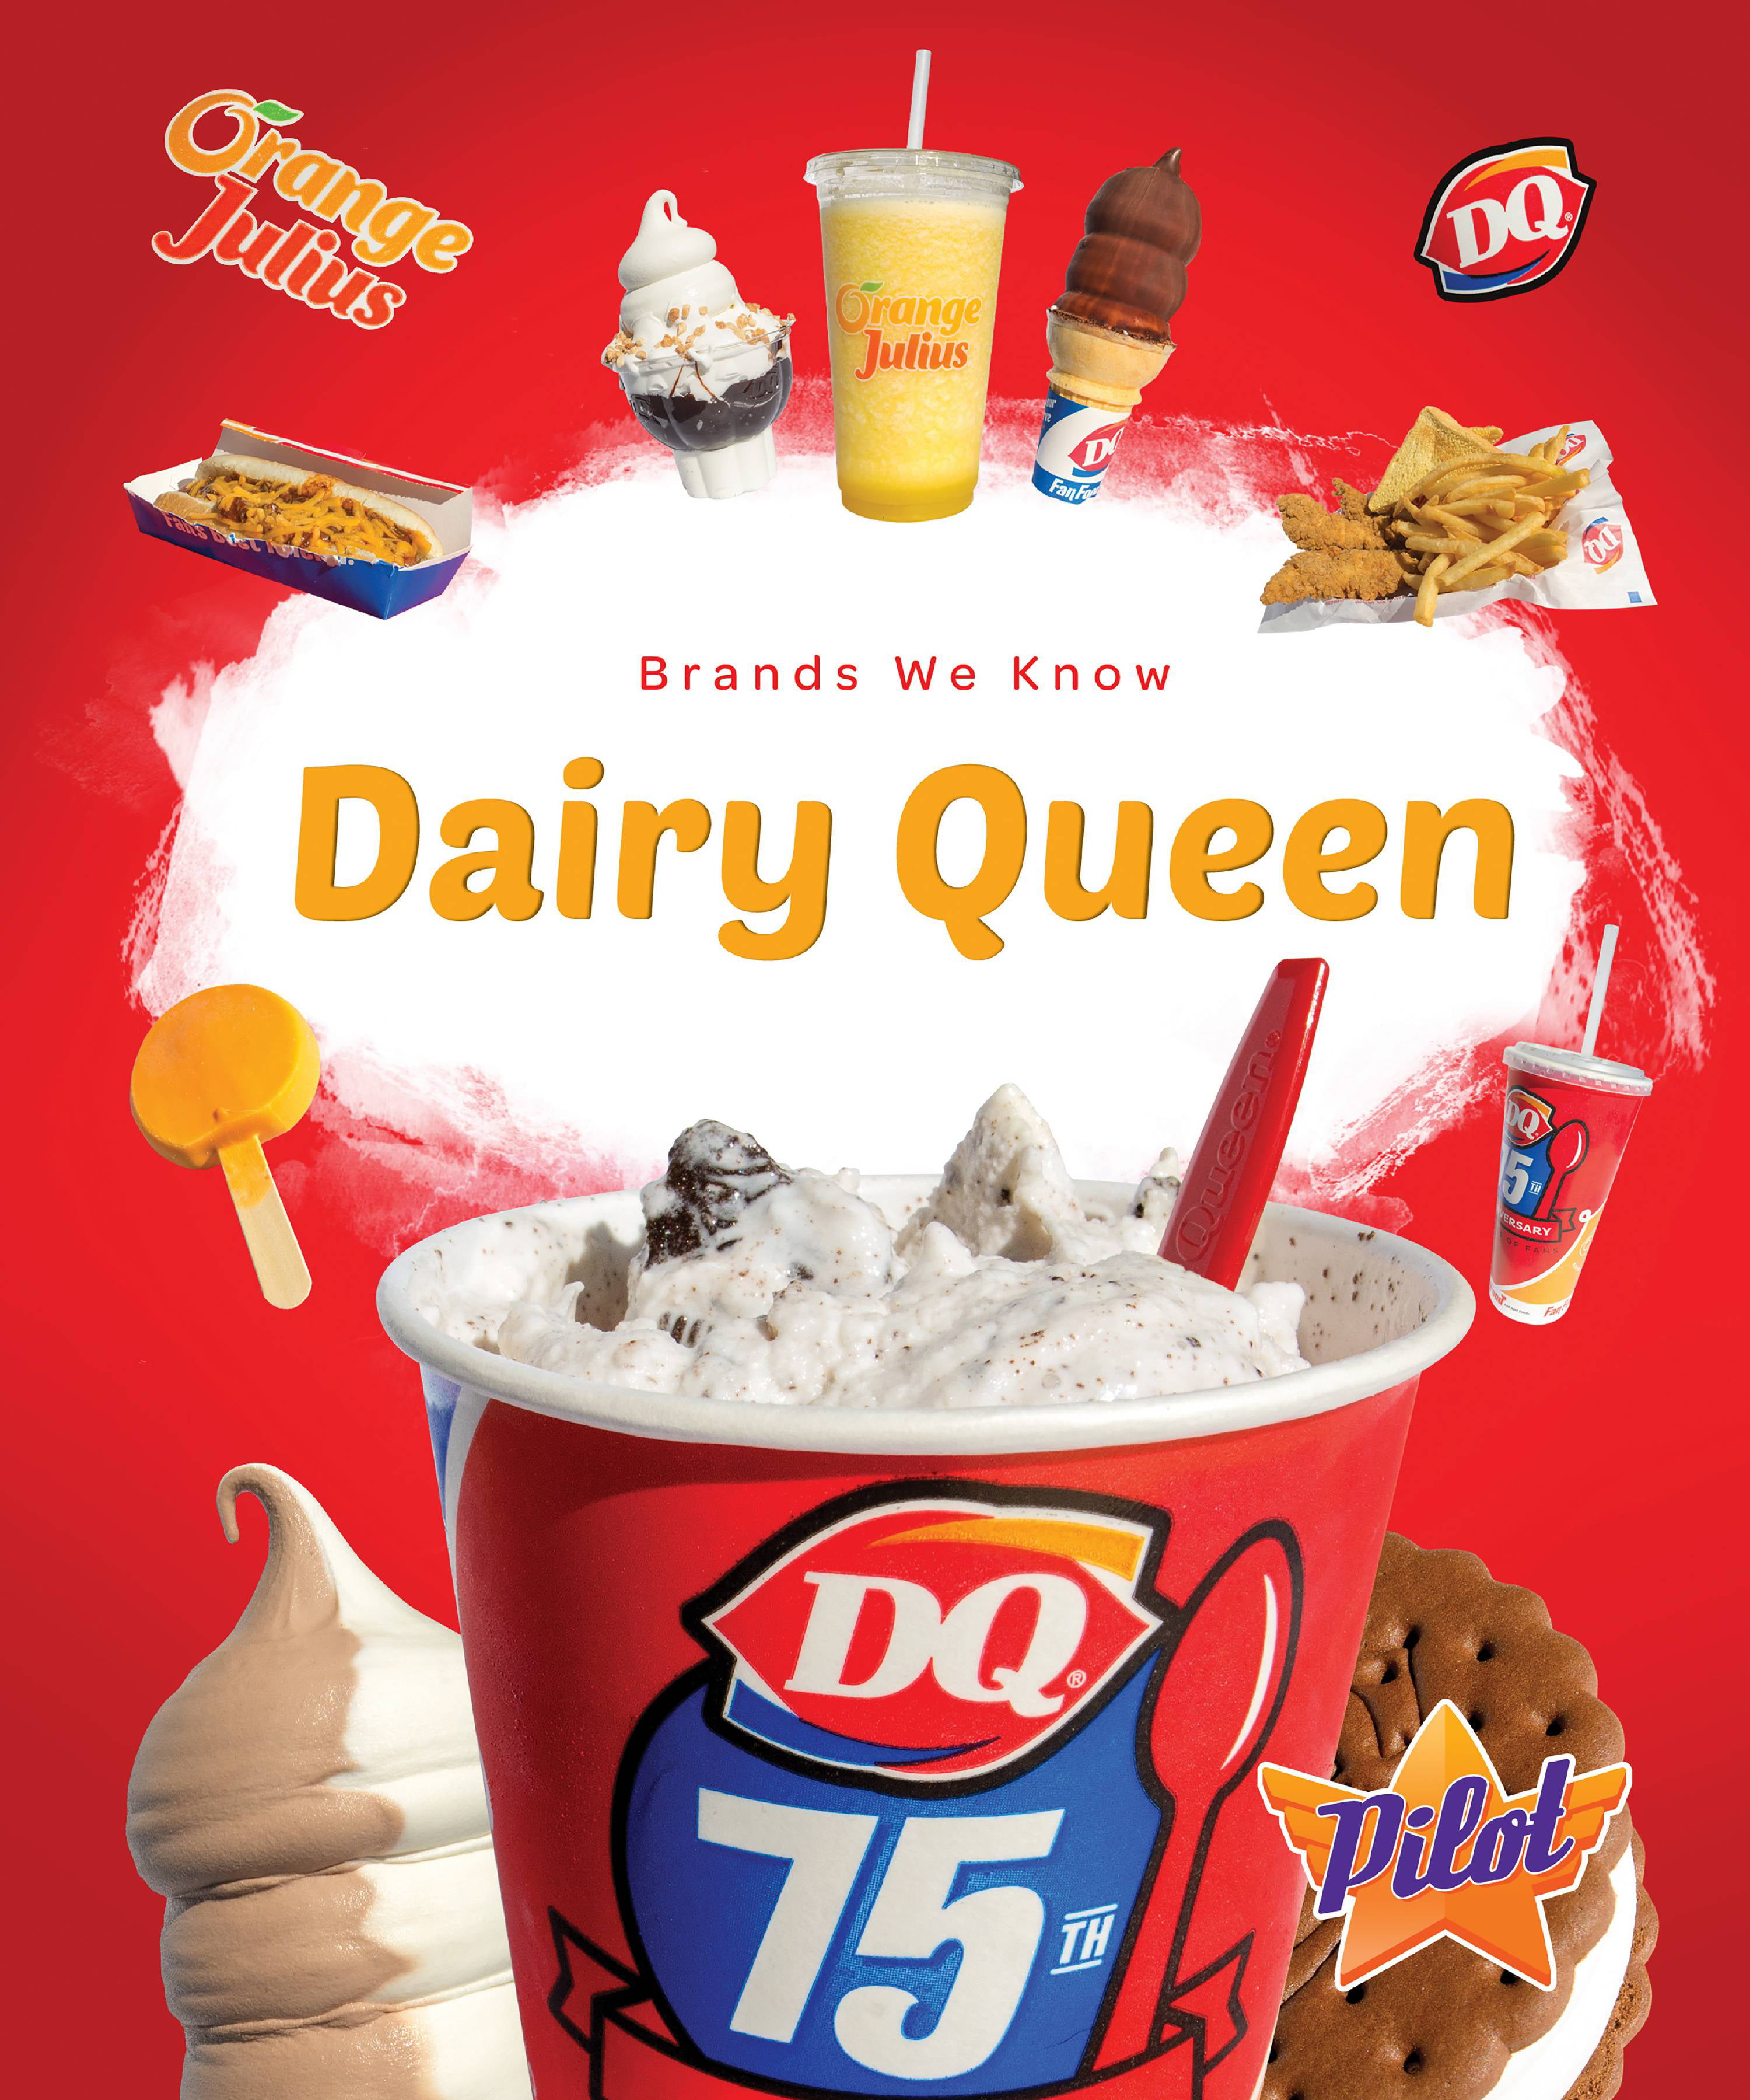 Dairy queen. Dairy Queen History. DQ. DQ марка.